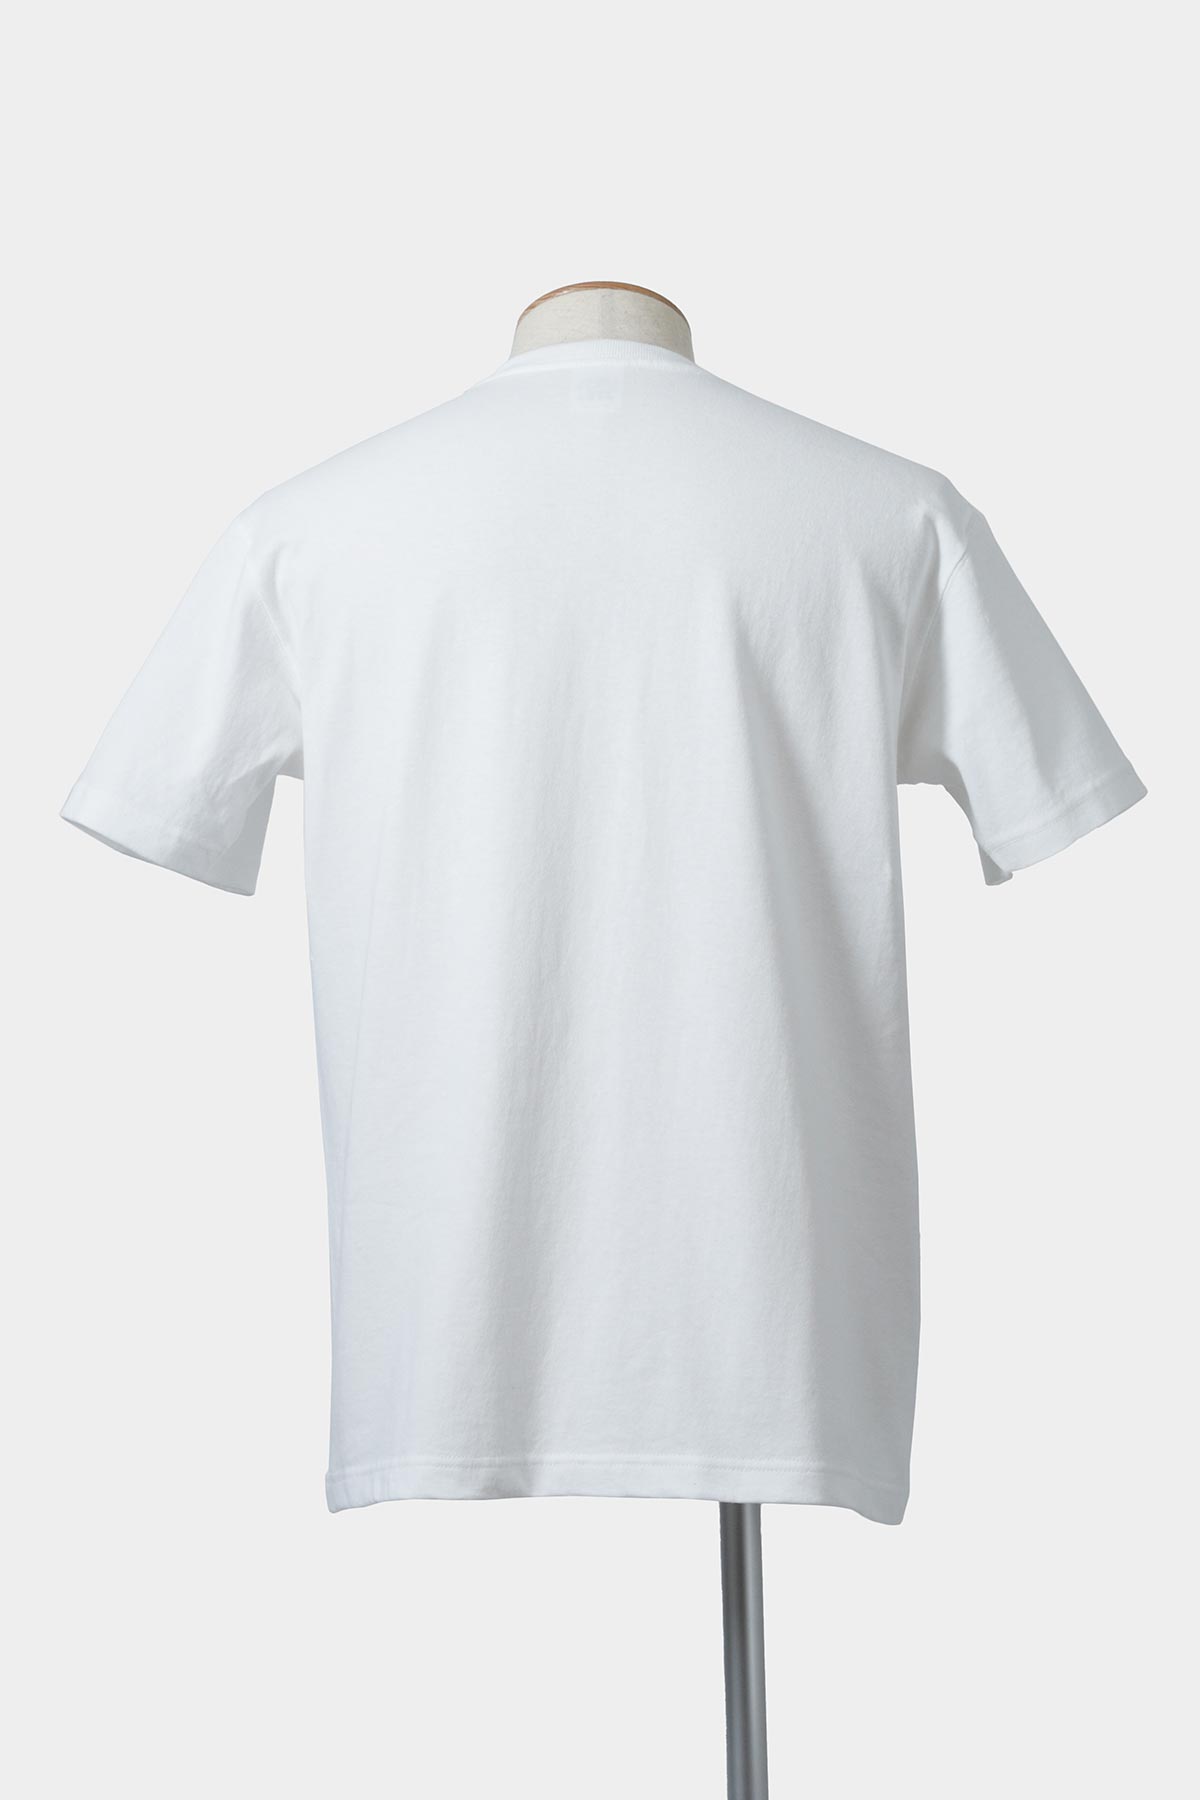 【受注生産】 XLサイズ ポケットTシャツ 